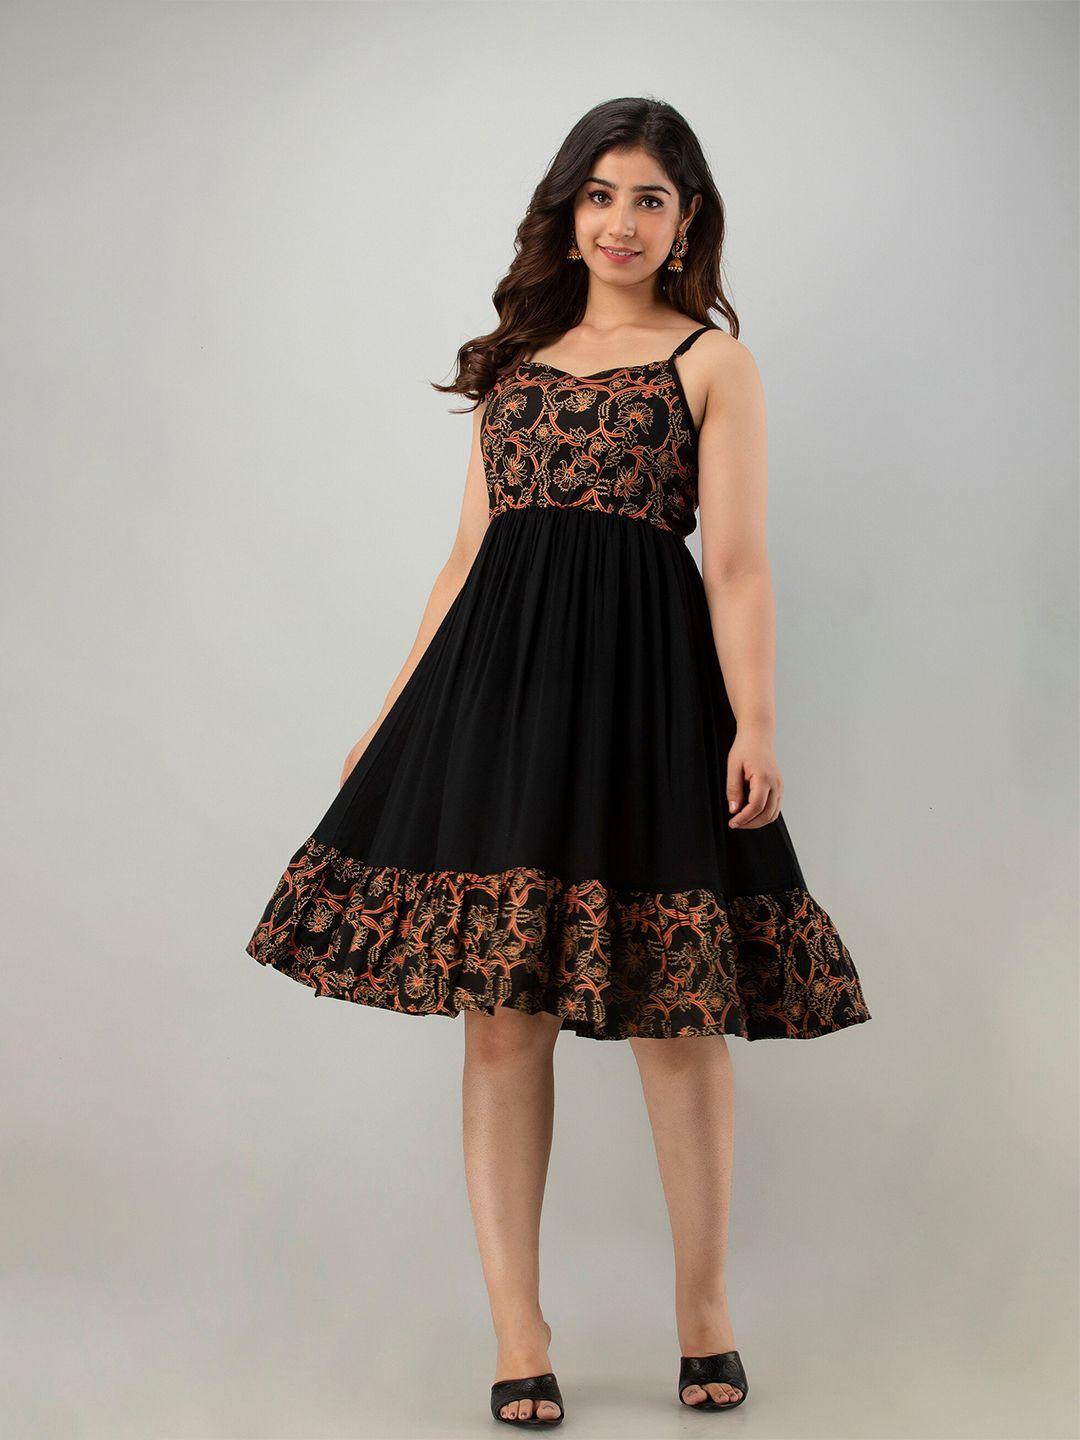 kasheeda-black-floral-print-fit-&-flare-dress